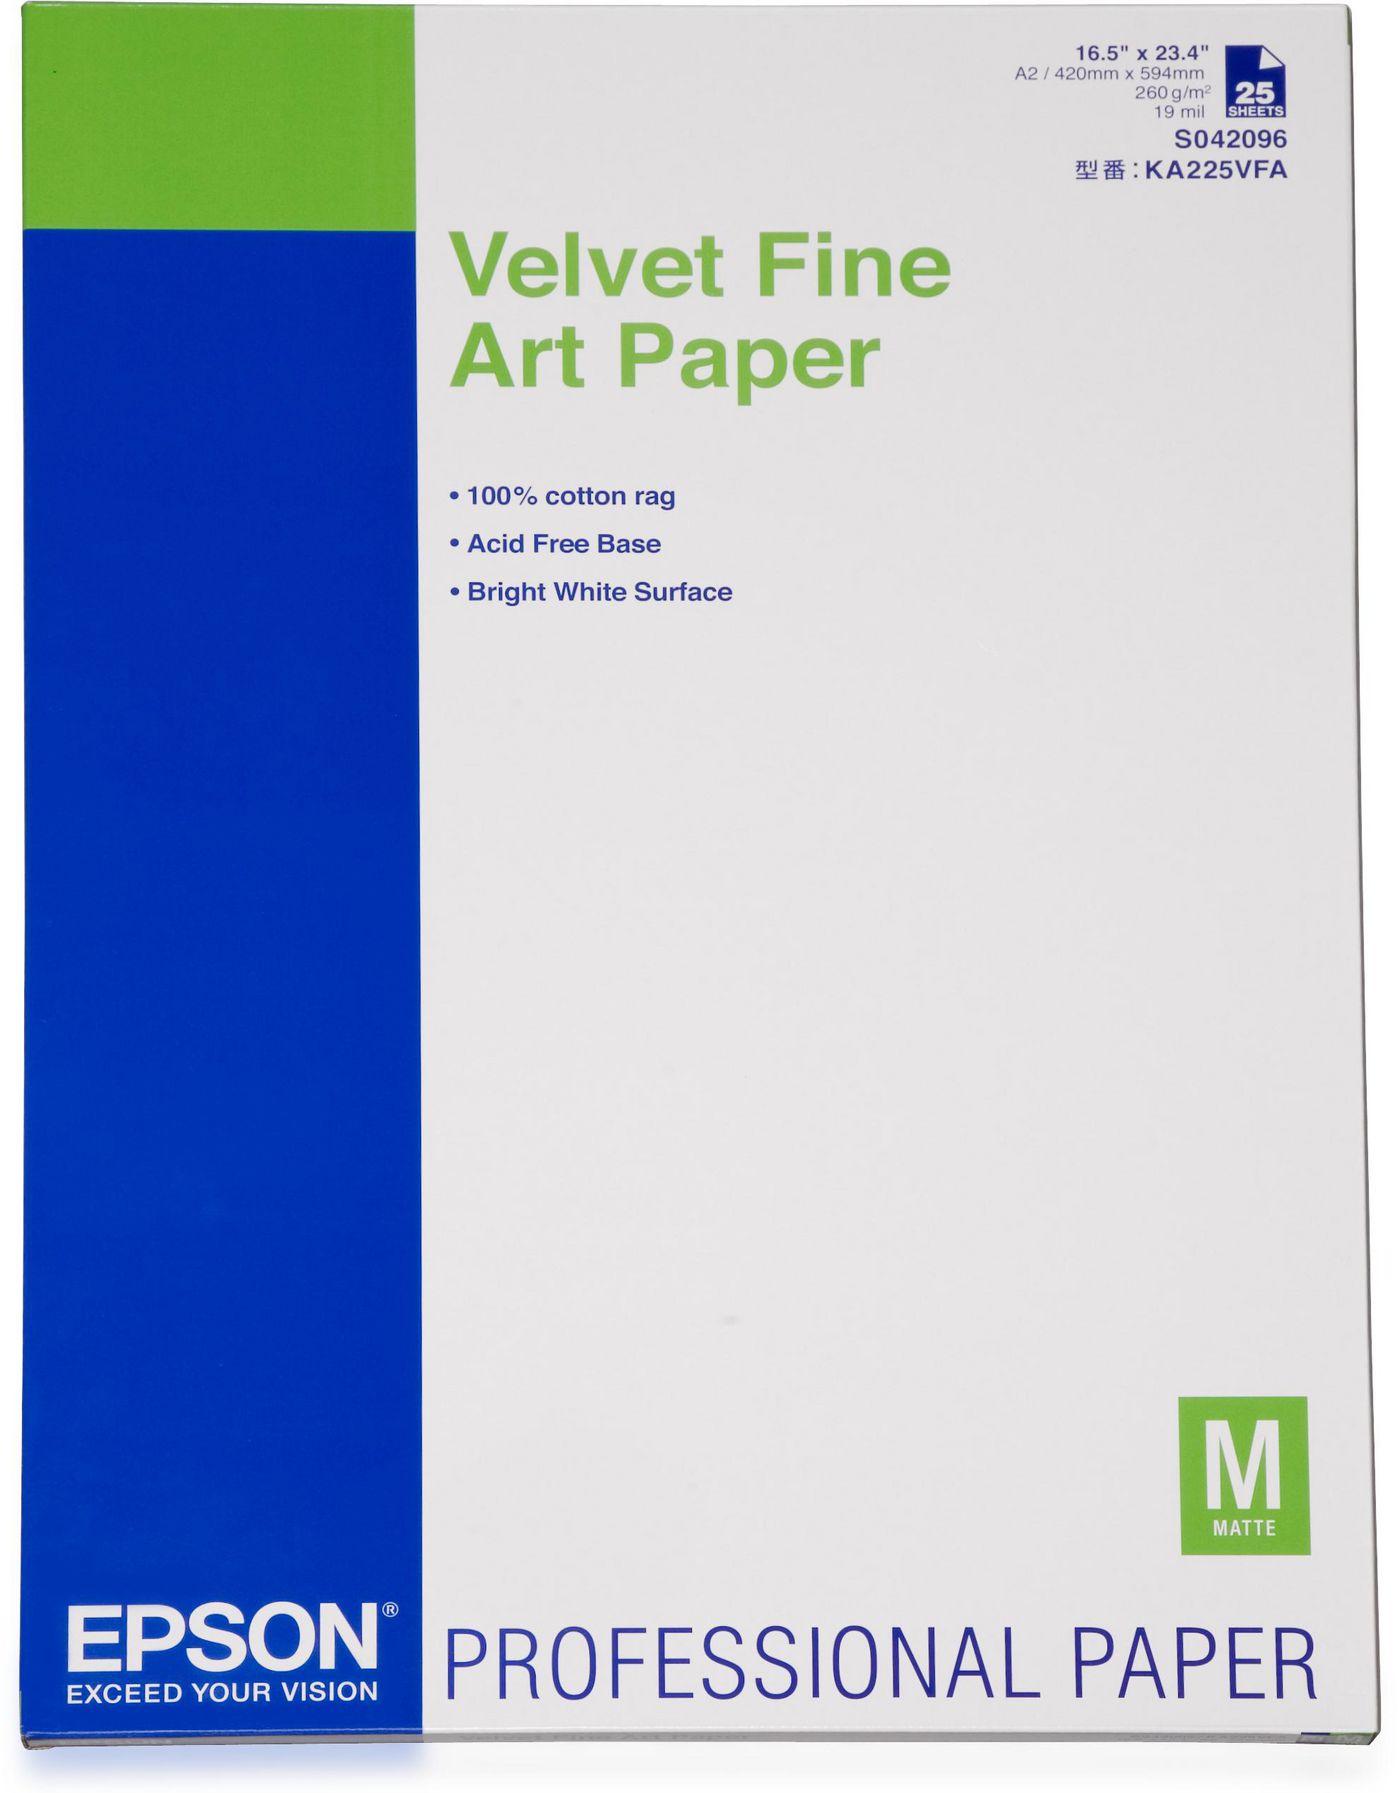 EPSON Velvet Fine Art Paper A2